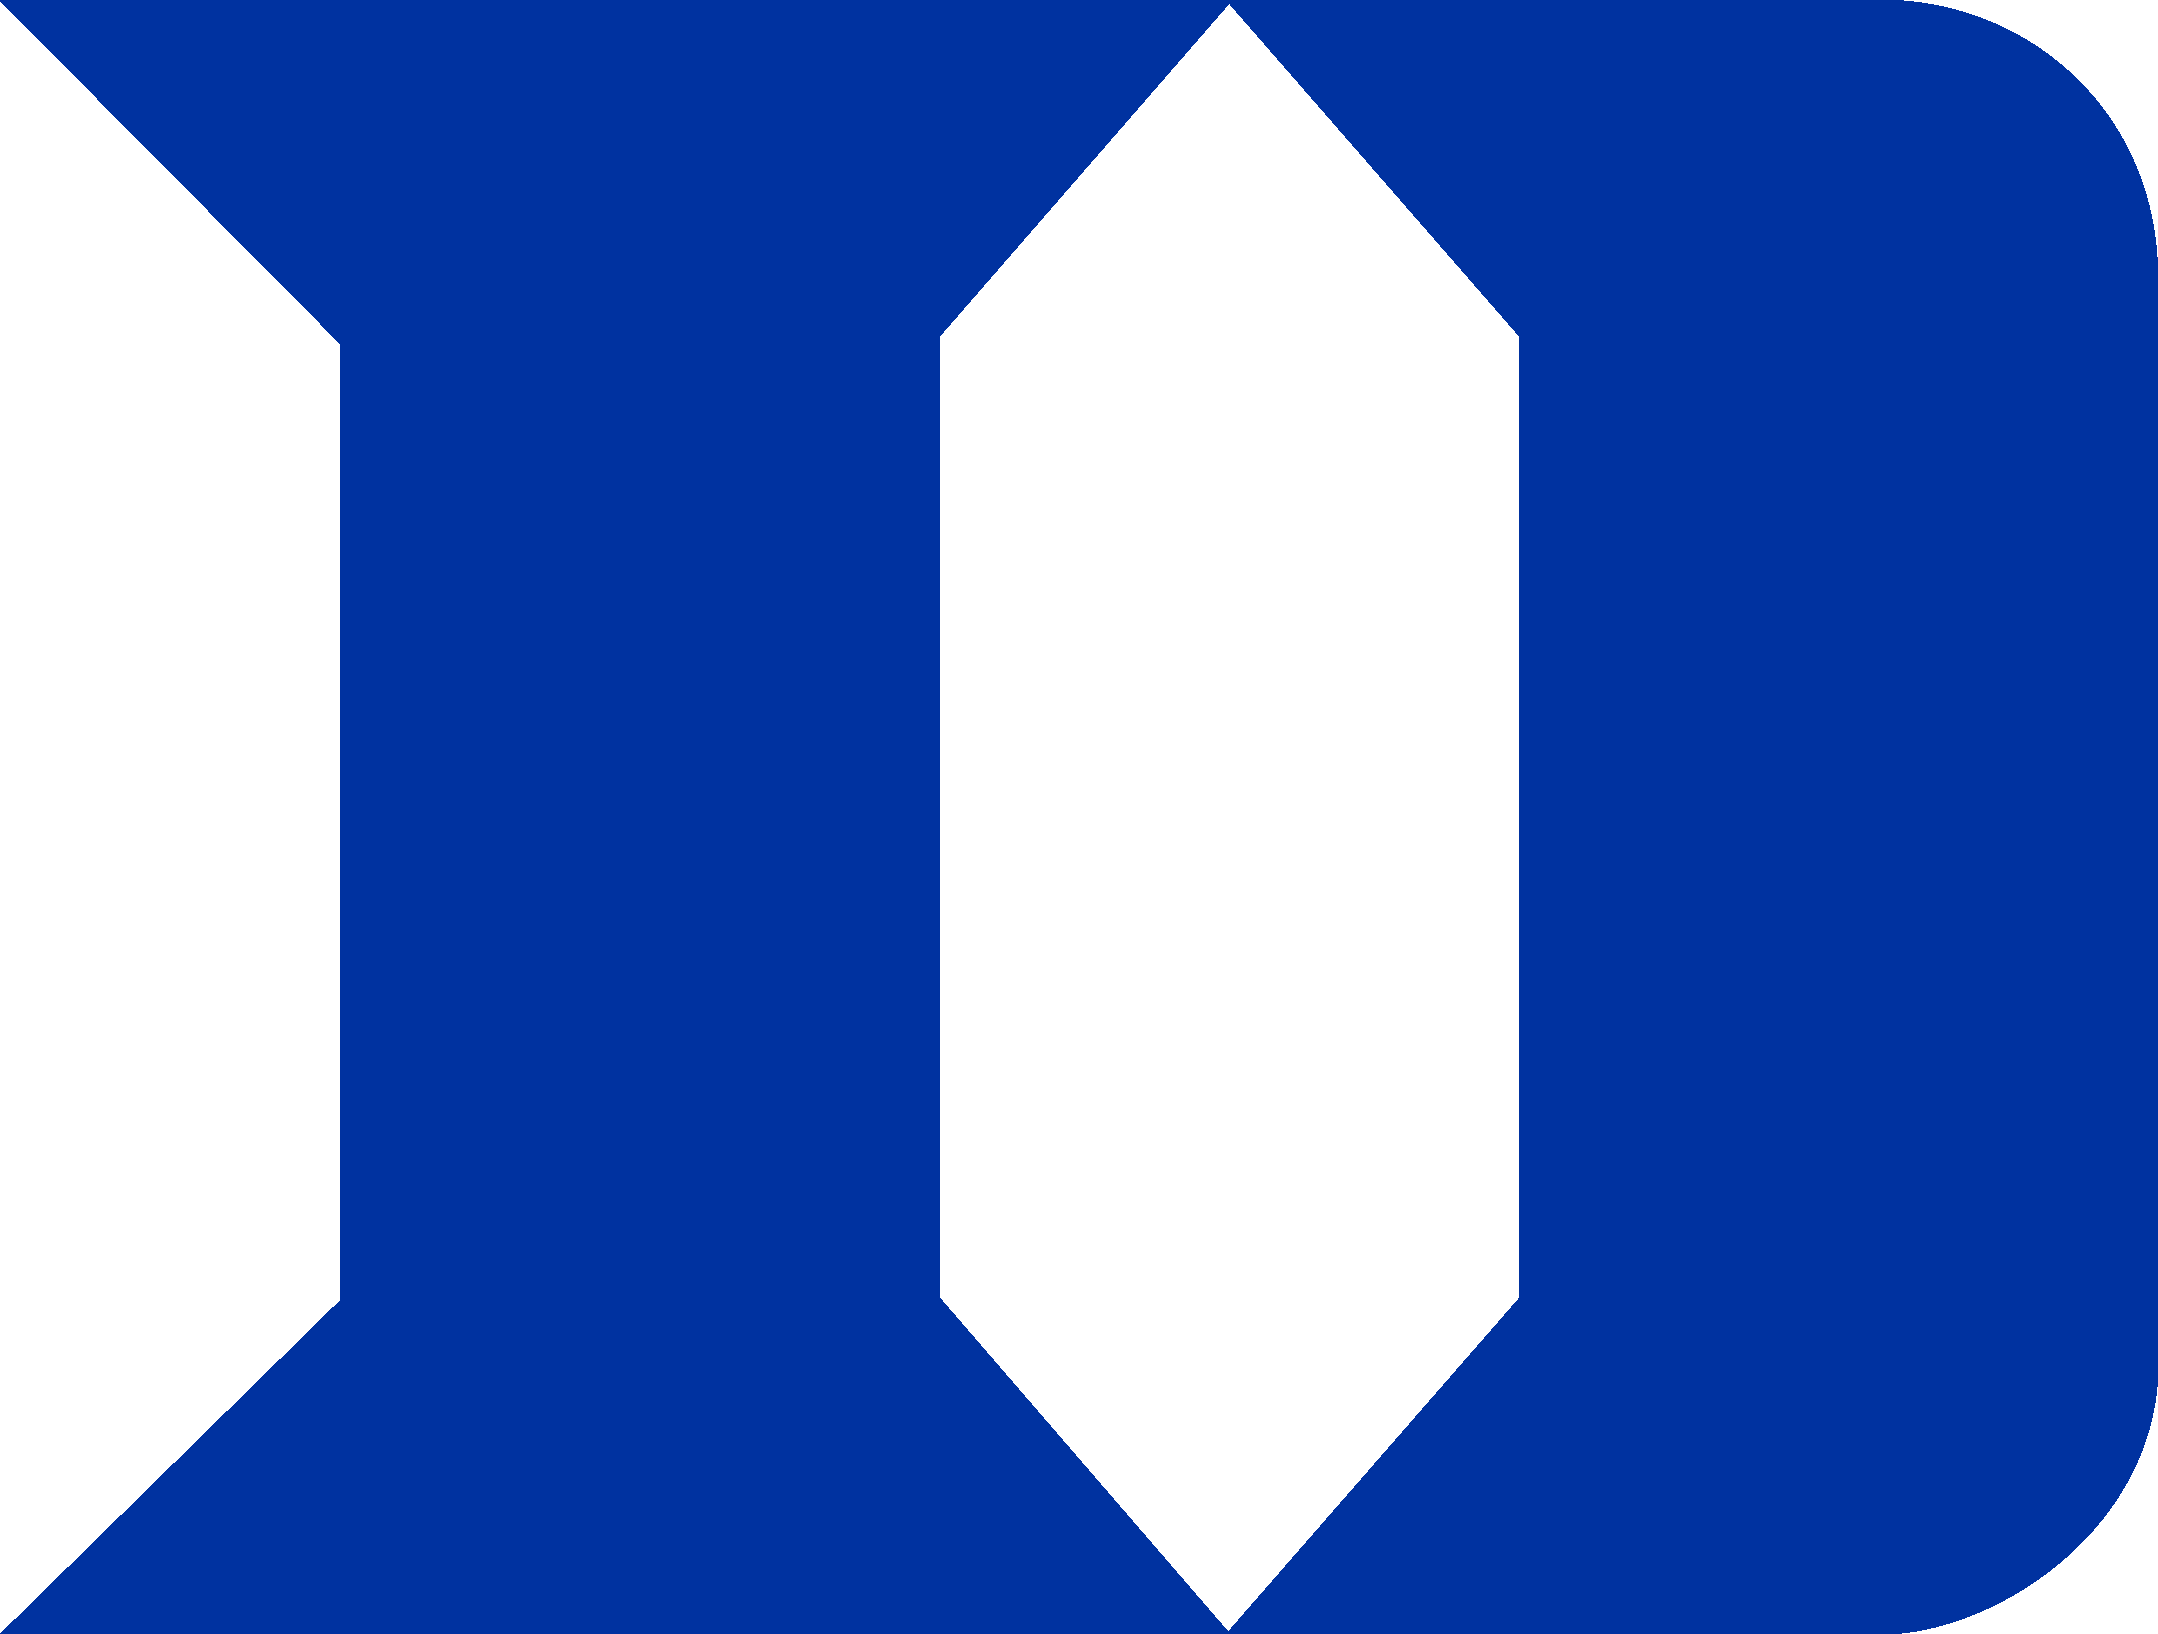 Duke Logo (Basketball   Blue Devils) png